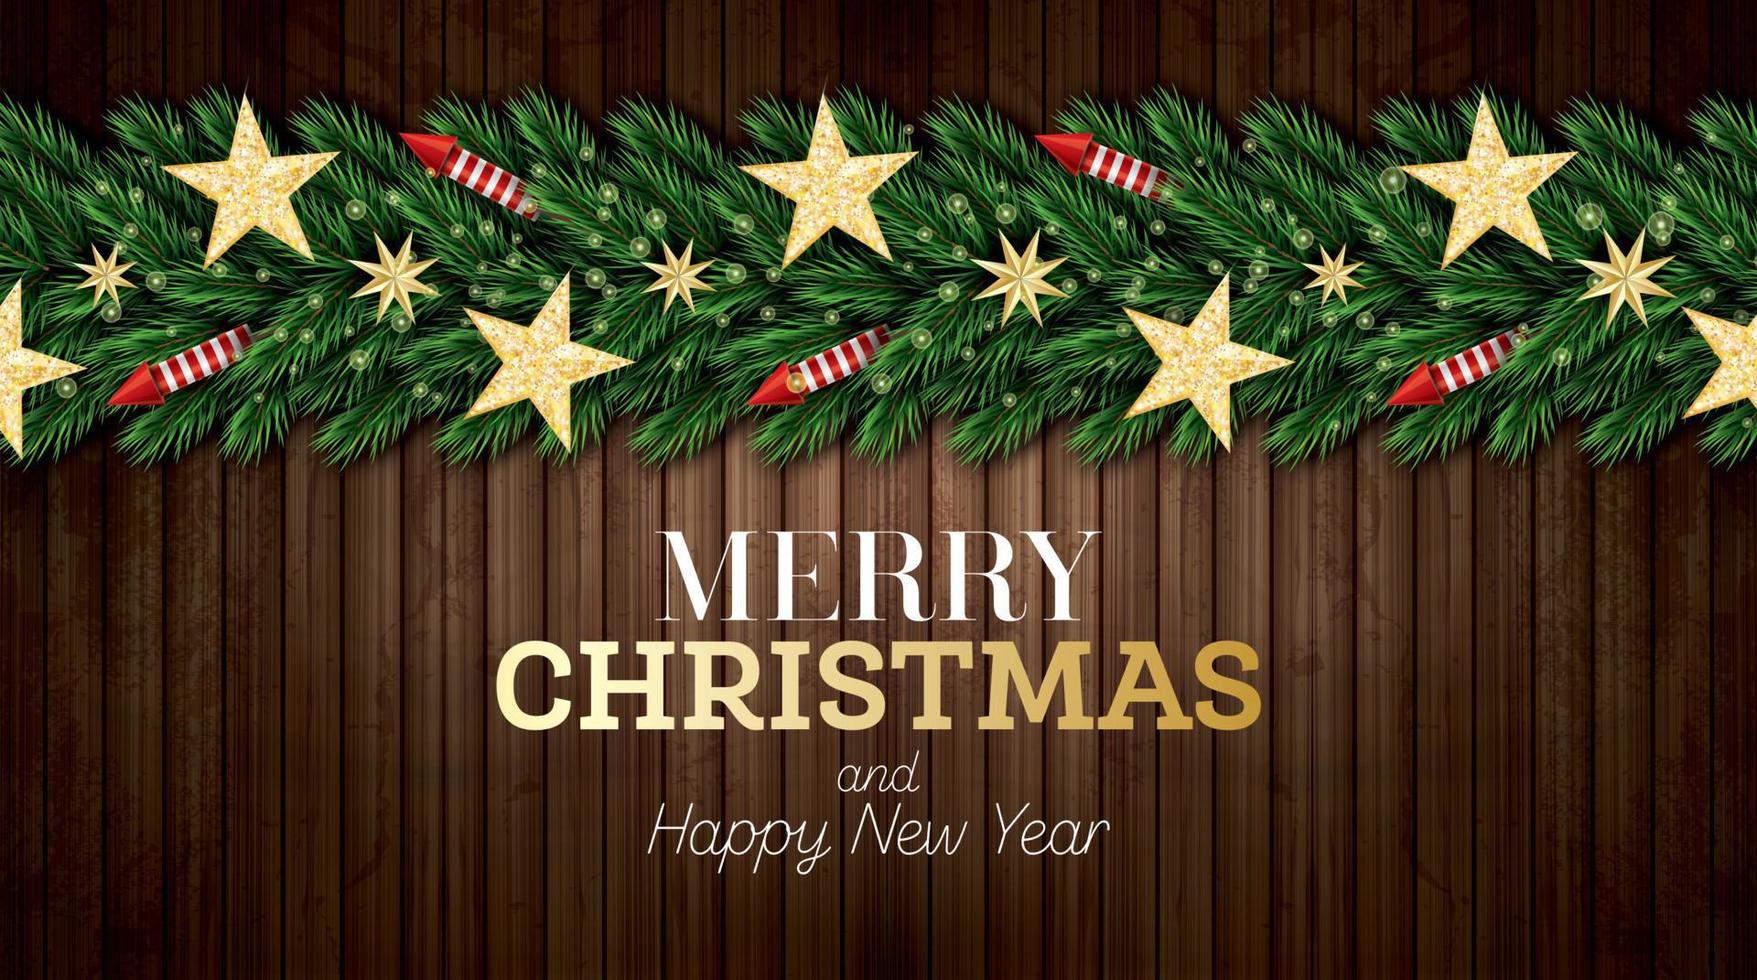 tarjeta de felicitación navideña con ramas de árboles de navidad, cohetes rojos y estrellas doradas sobre fondo de madera. vector